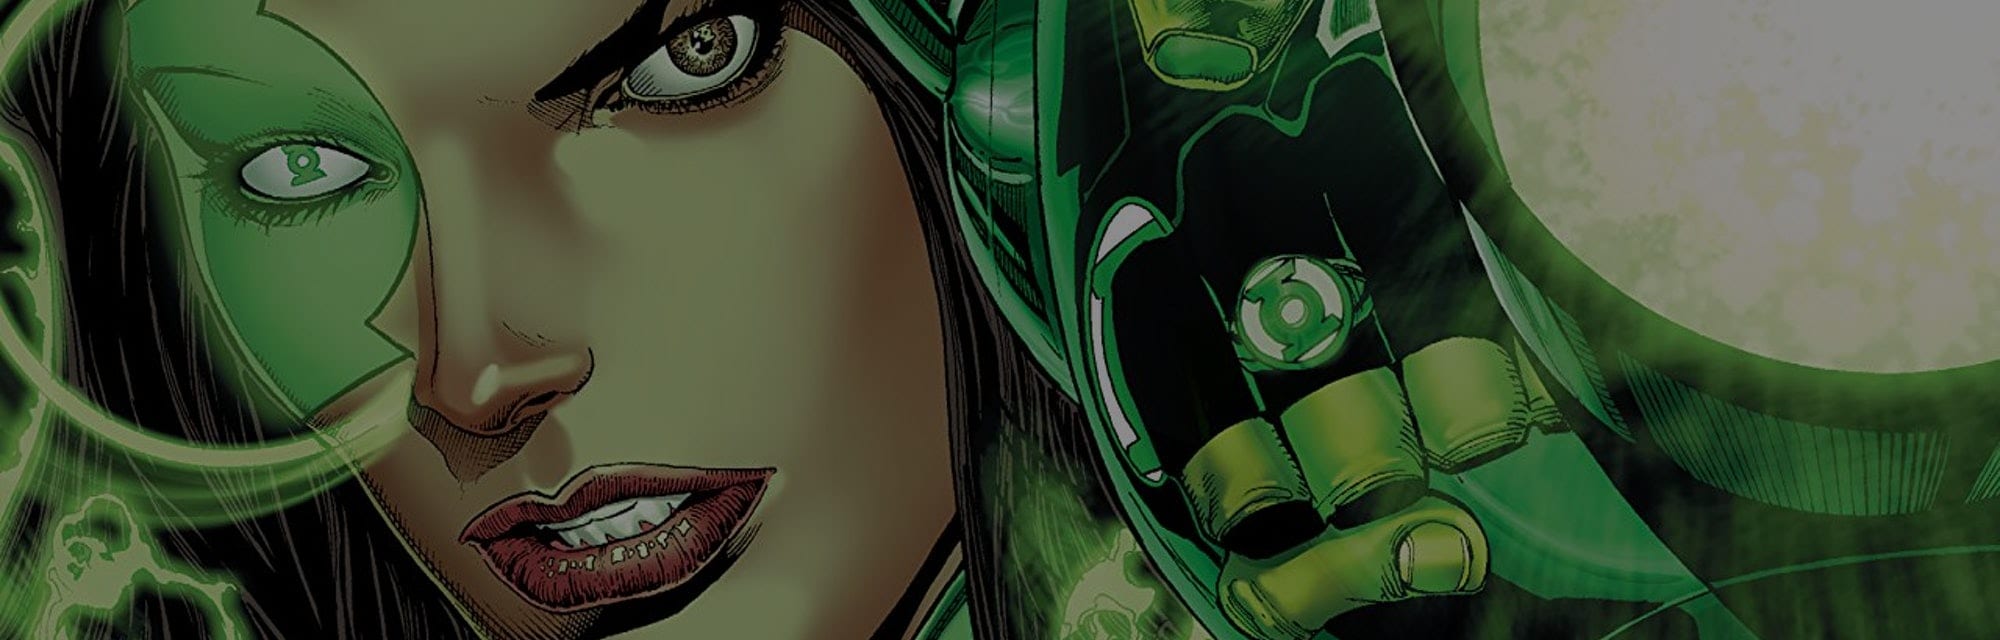 Lanterna Verde: ecco come potrebbe apparire Eiza Gonzalez per i fan